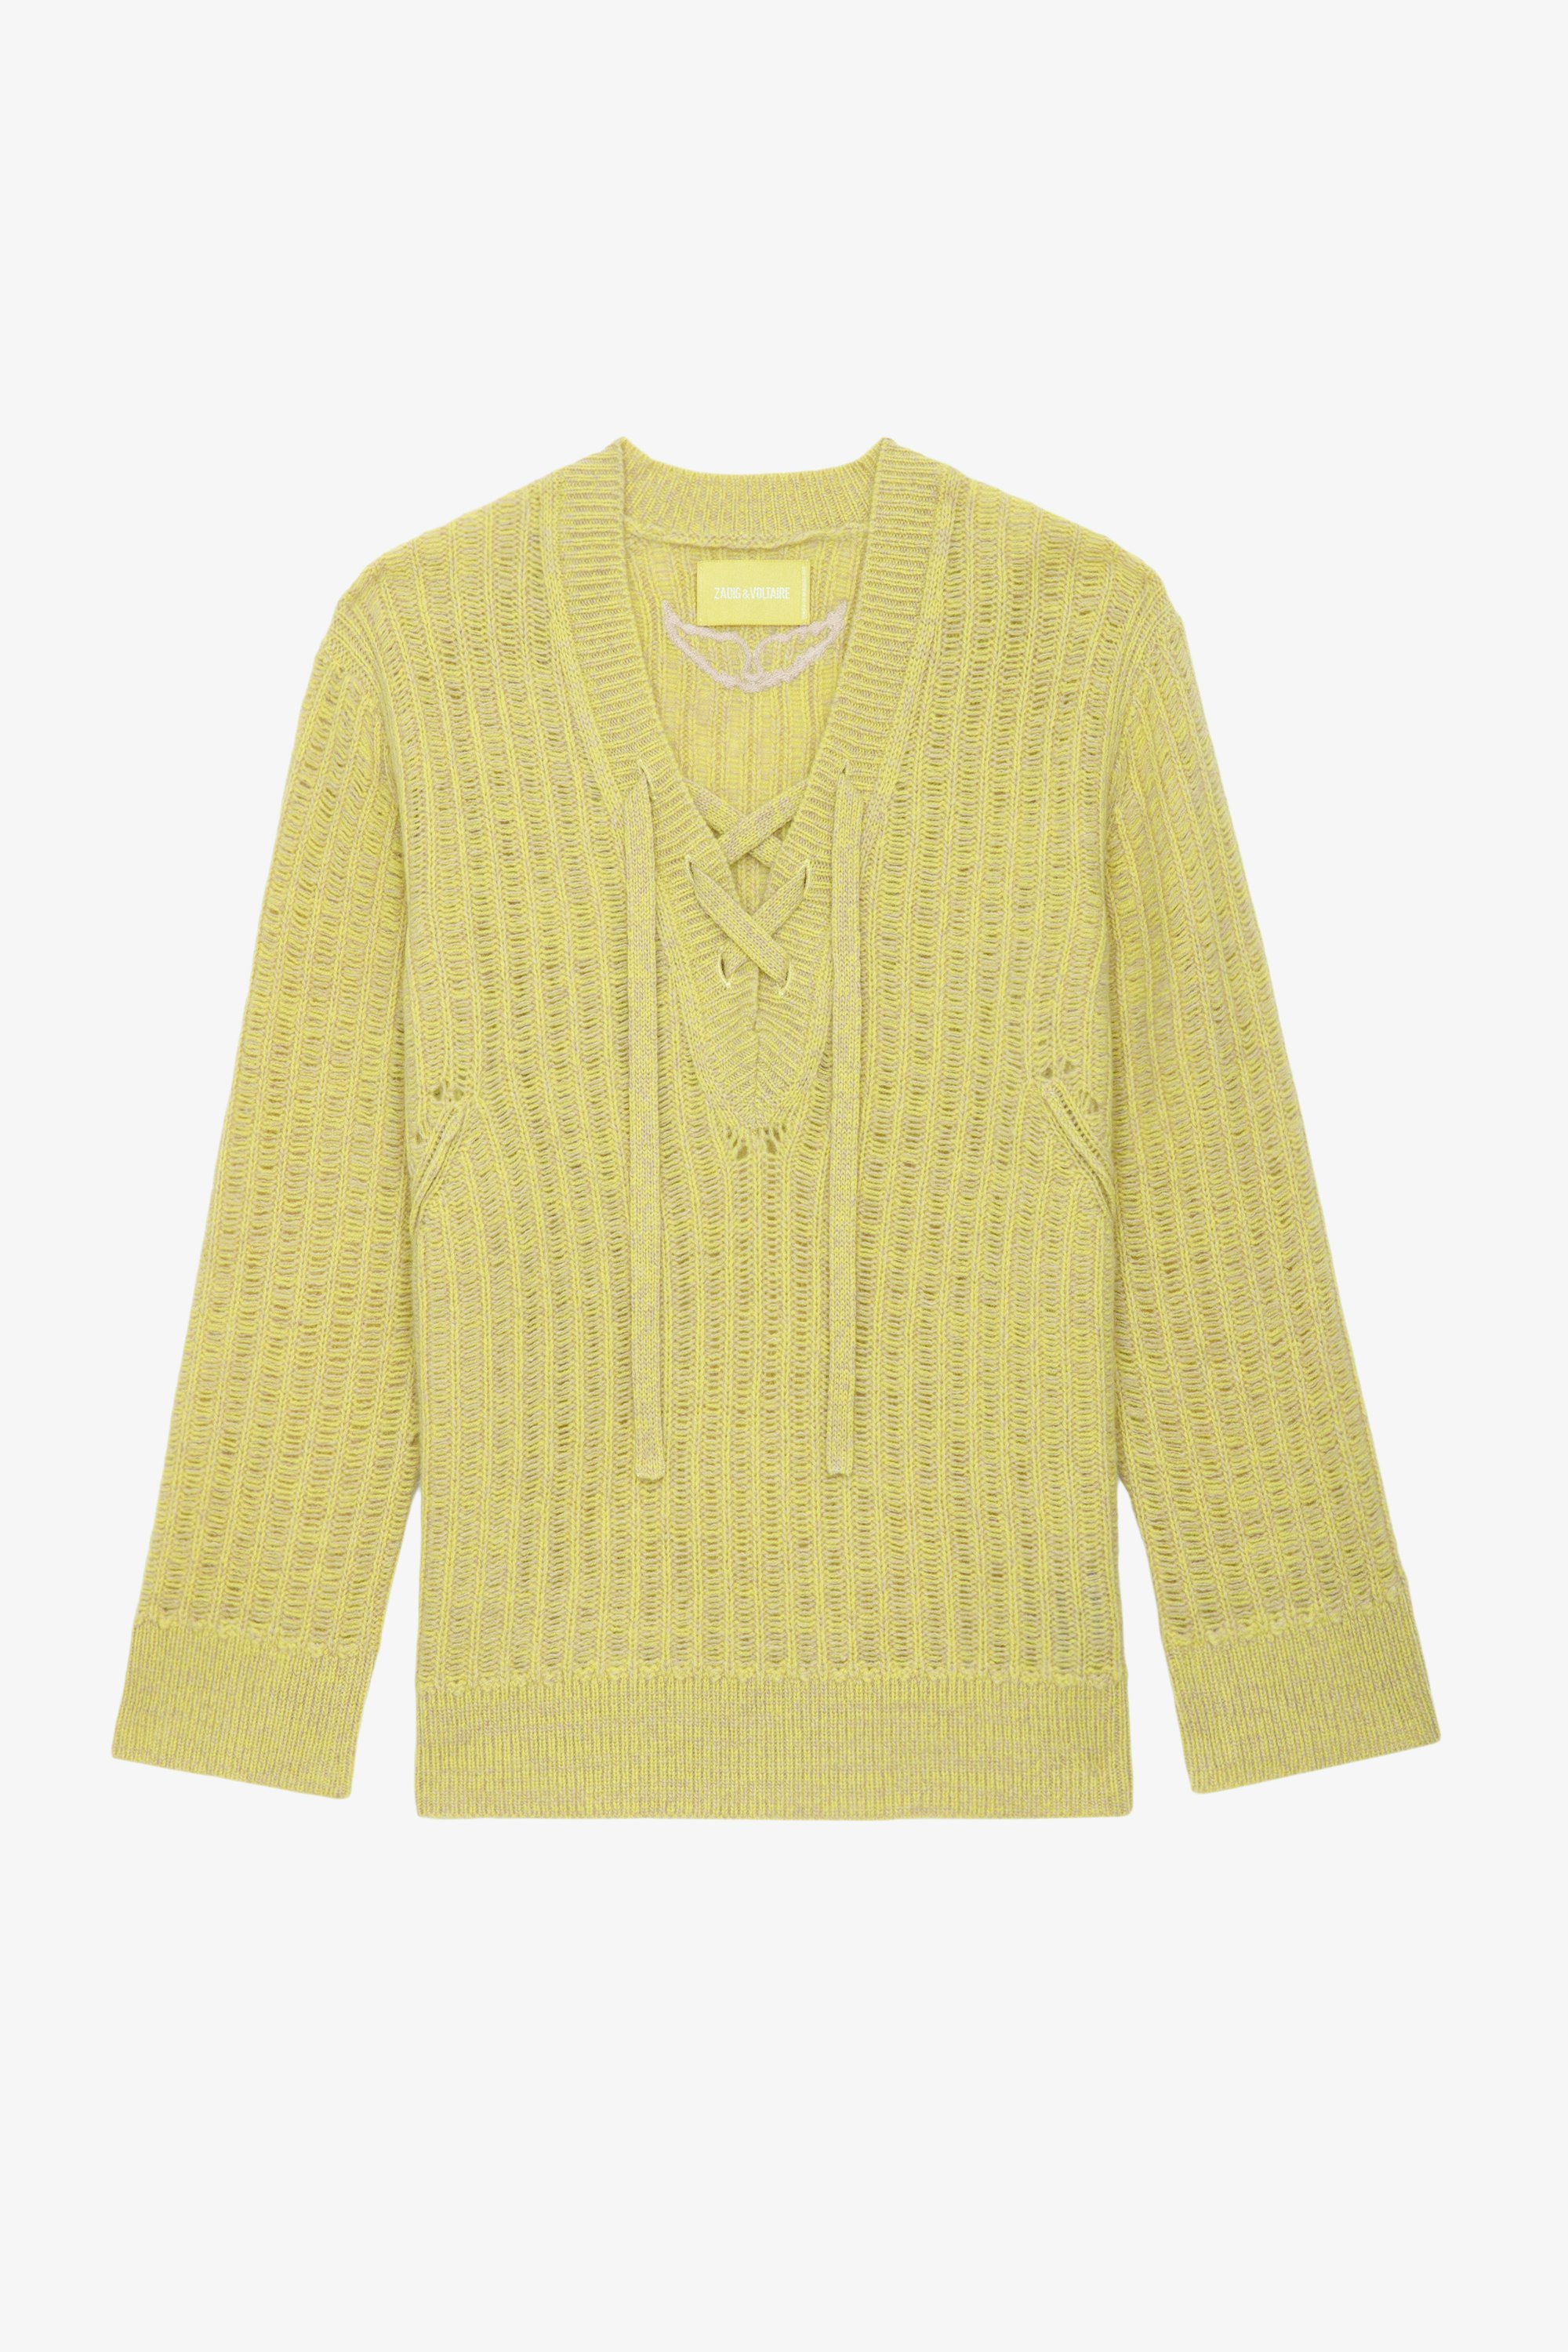 Jersey Fanny - Jersey calado de lana merina en color amarillo claro con mangas largas y cintas de ajuste.